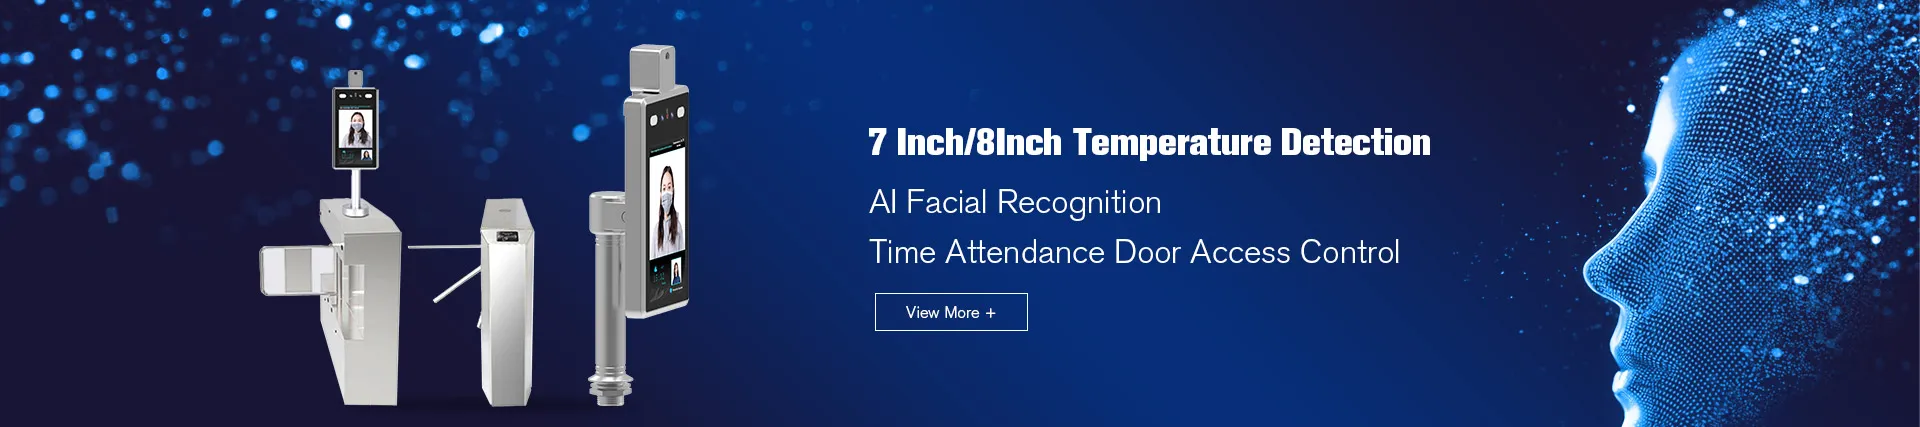 Dispositivo de reconhecimento facial AI de detecção de temperatura